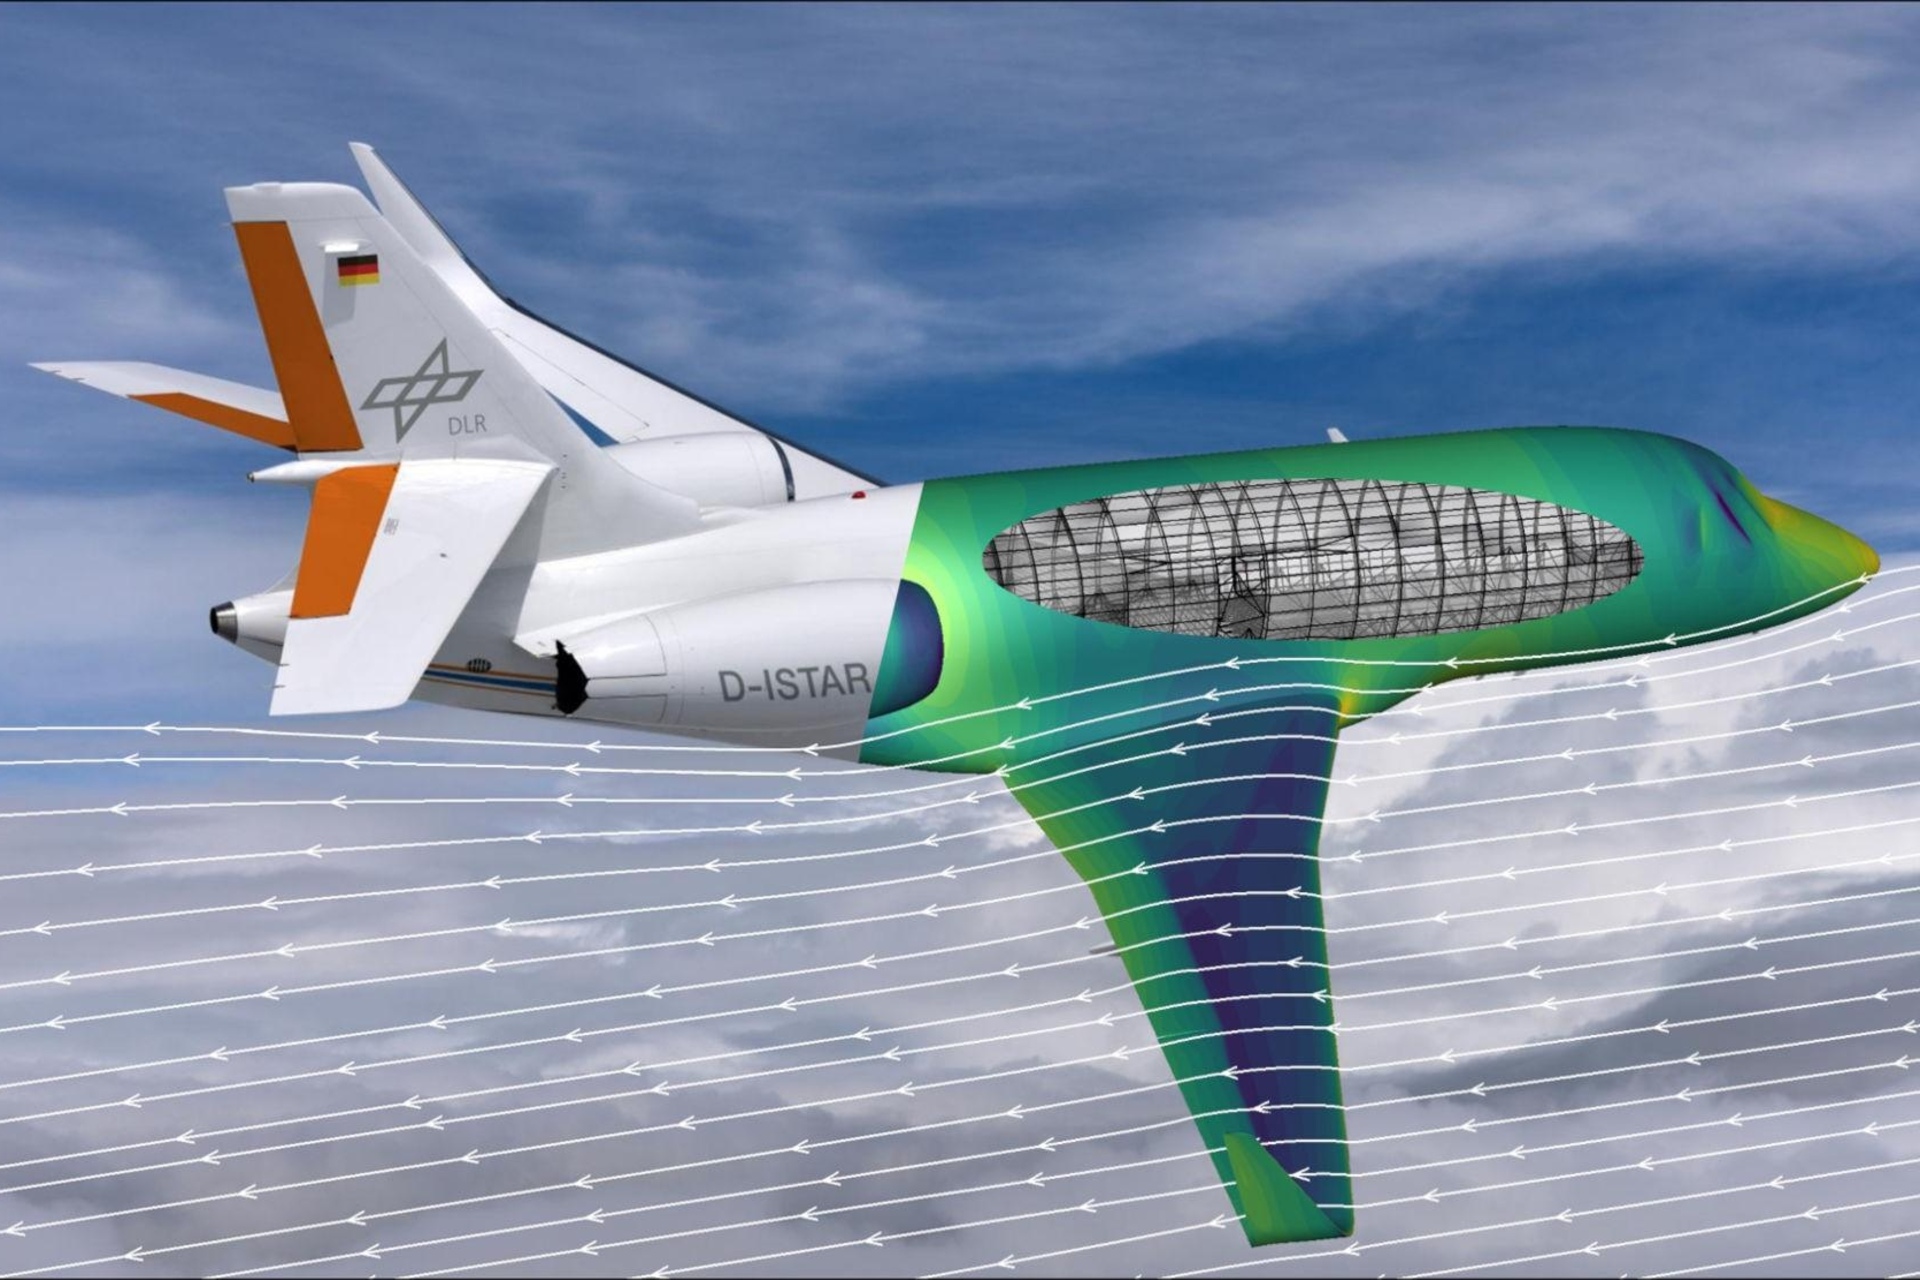 सीएफडी: वायुगतिकीय प्रवाह, कम्प्यूटेशनल तरल गतिशीलता या सीएफडी का कंप्यूटर-सहायता प्राप्त सिमुलेशन अगली पीढ़ी के हवाई जहाज के विकास का आधार है: डीएलआर के आईएसटीएआर अनुसंधान विमान को प्रवाह सिमुलेशन के रंग ढाल का उपयोग करके देखे गए एक अनुभाग के साथ दिखाया गया है एयरबस, डीएलआर और ओनेरा द्वारा विकसित नए सॉफ्टवेयर के साथ